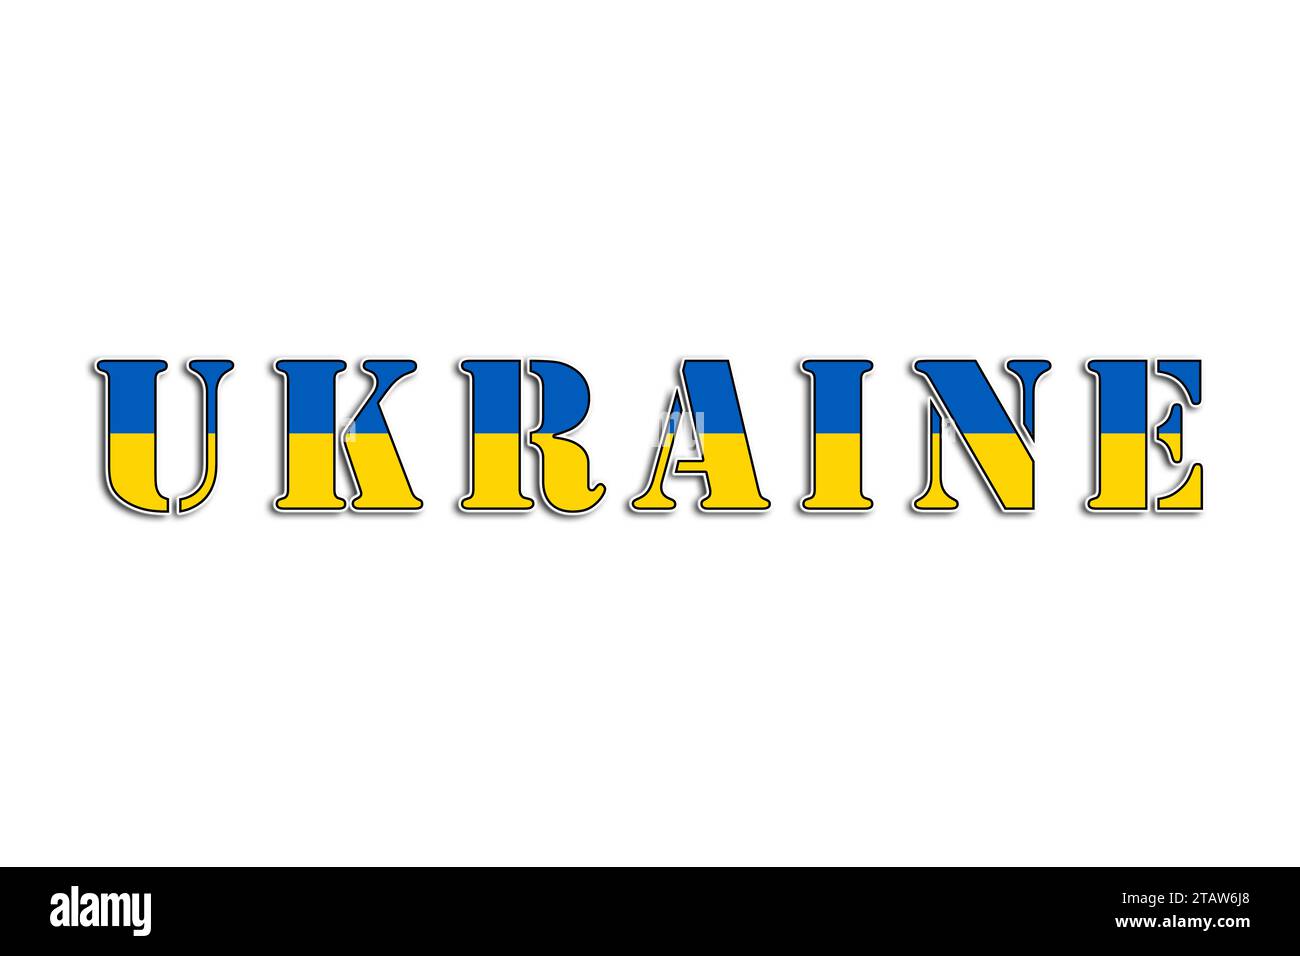 Ukraine, der Name des Landes und die Farben der Flagge, illustrierte Grafiken des Logos und Herz für das ukrainische Volk Stockfoto